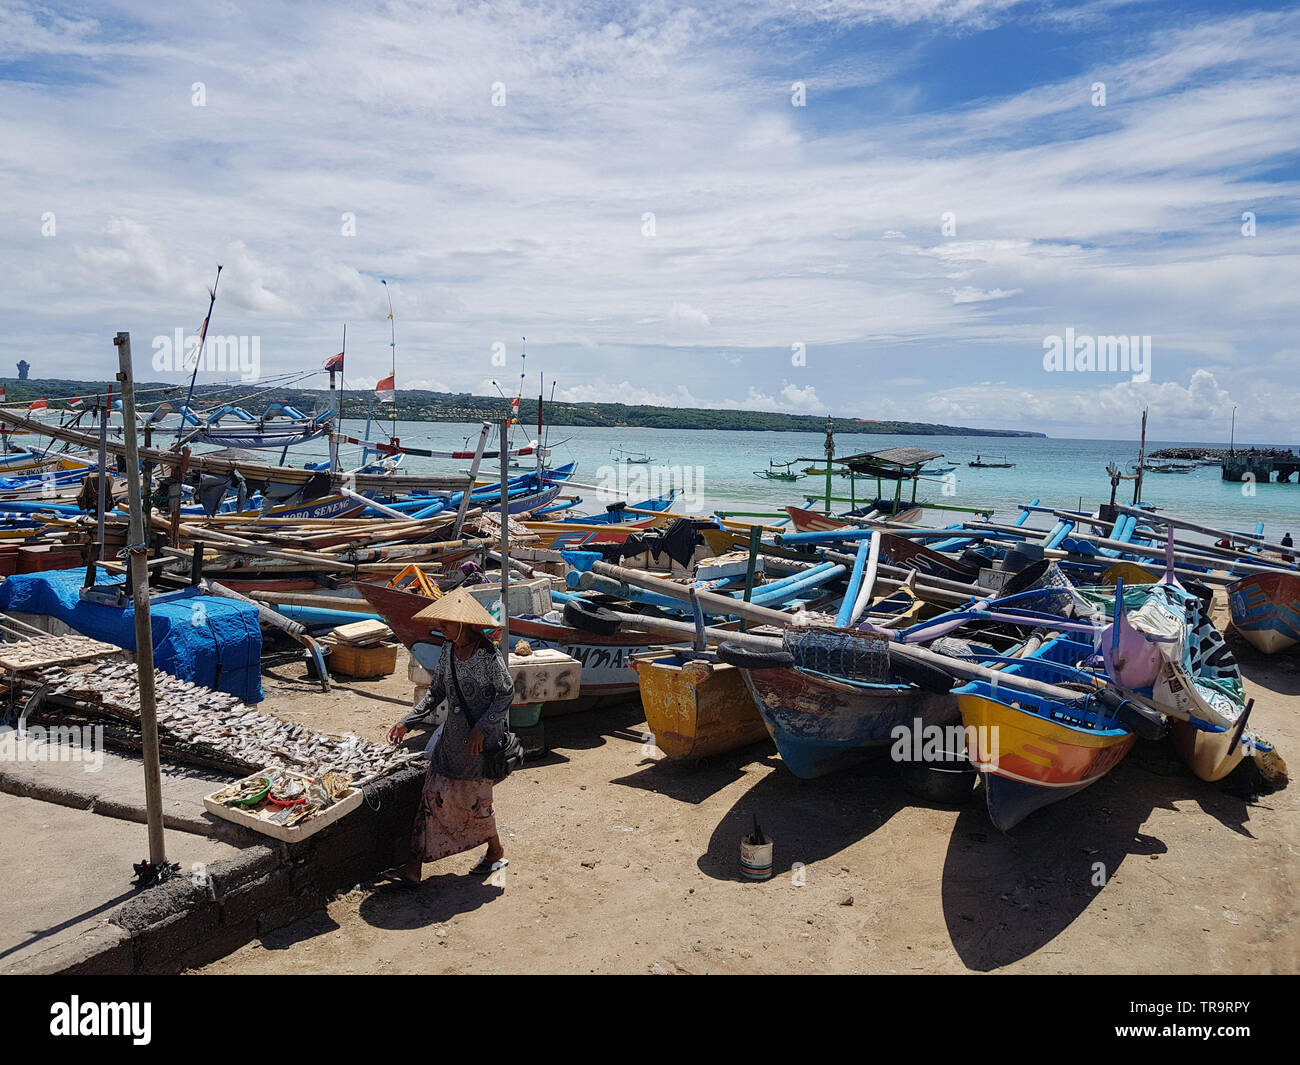 Indonesia bali jimbaran fishing boats hi-res stock photography and